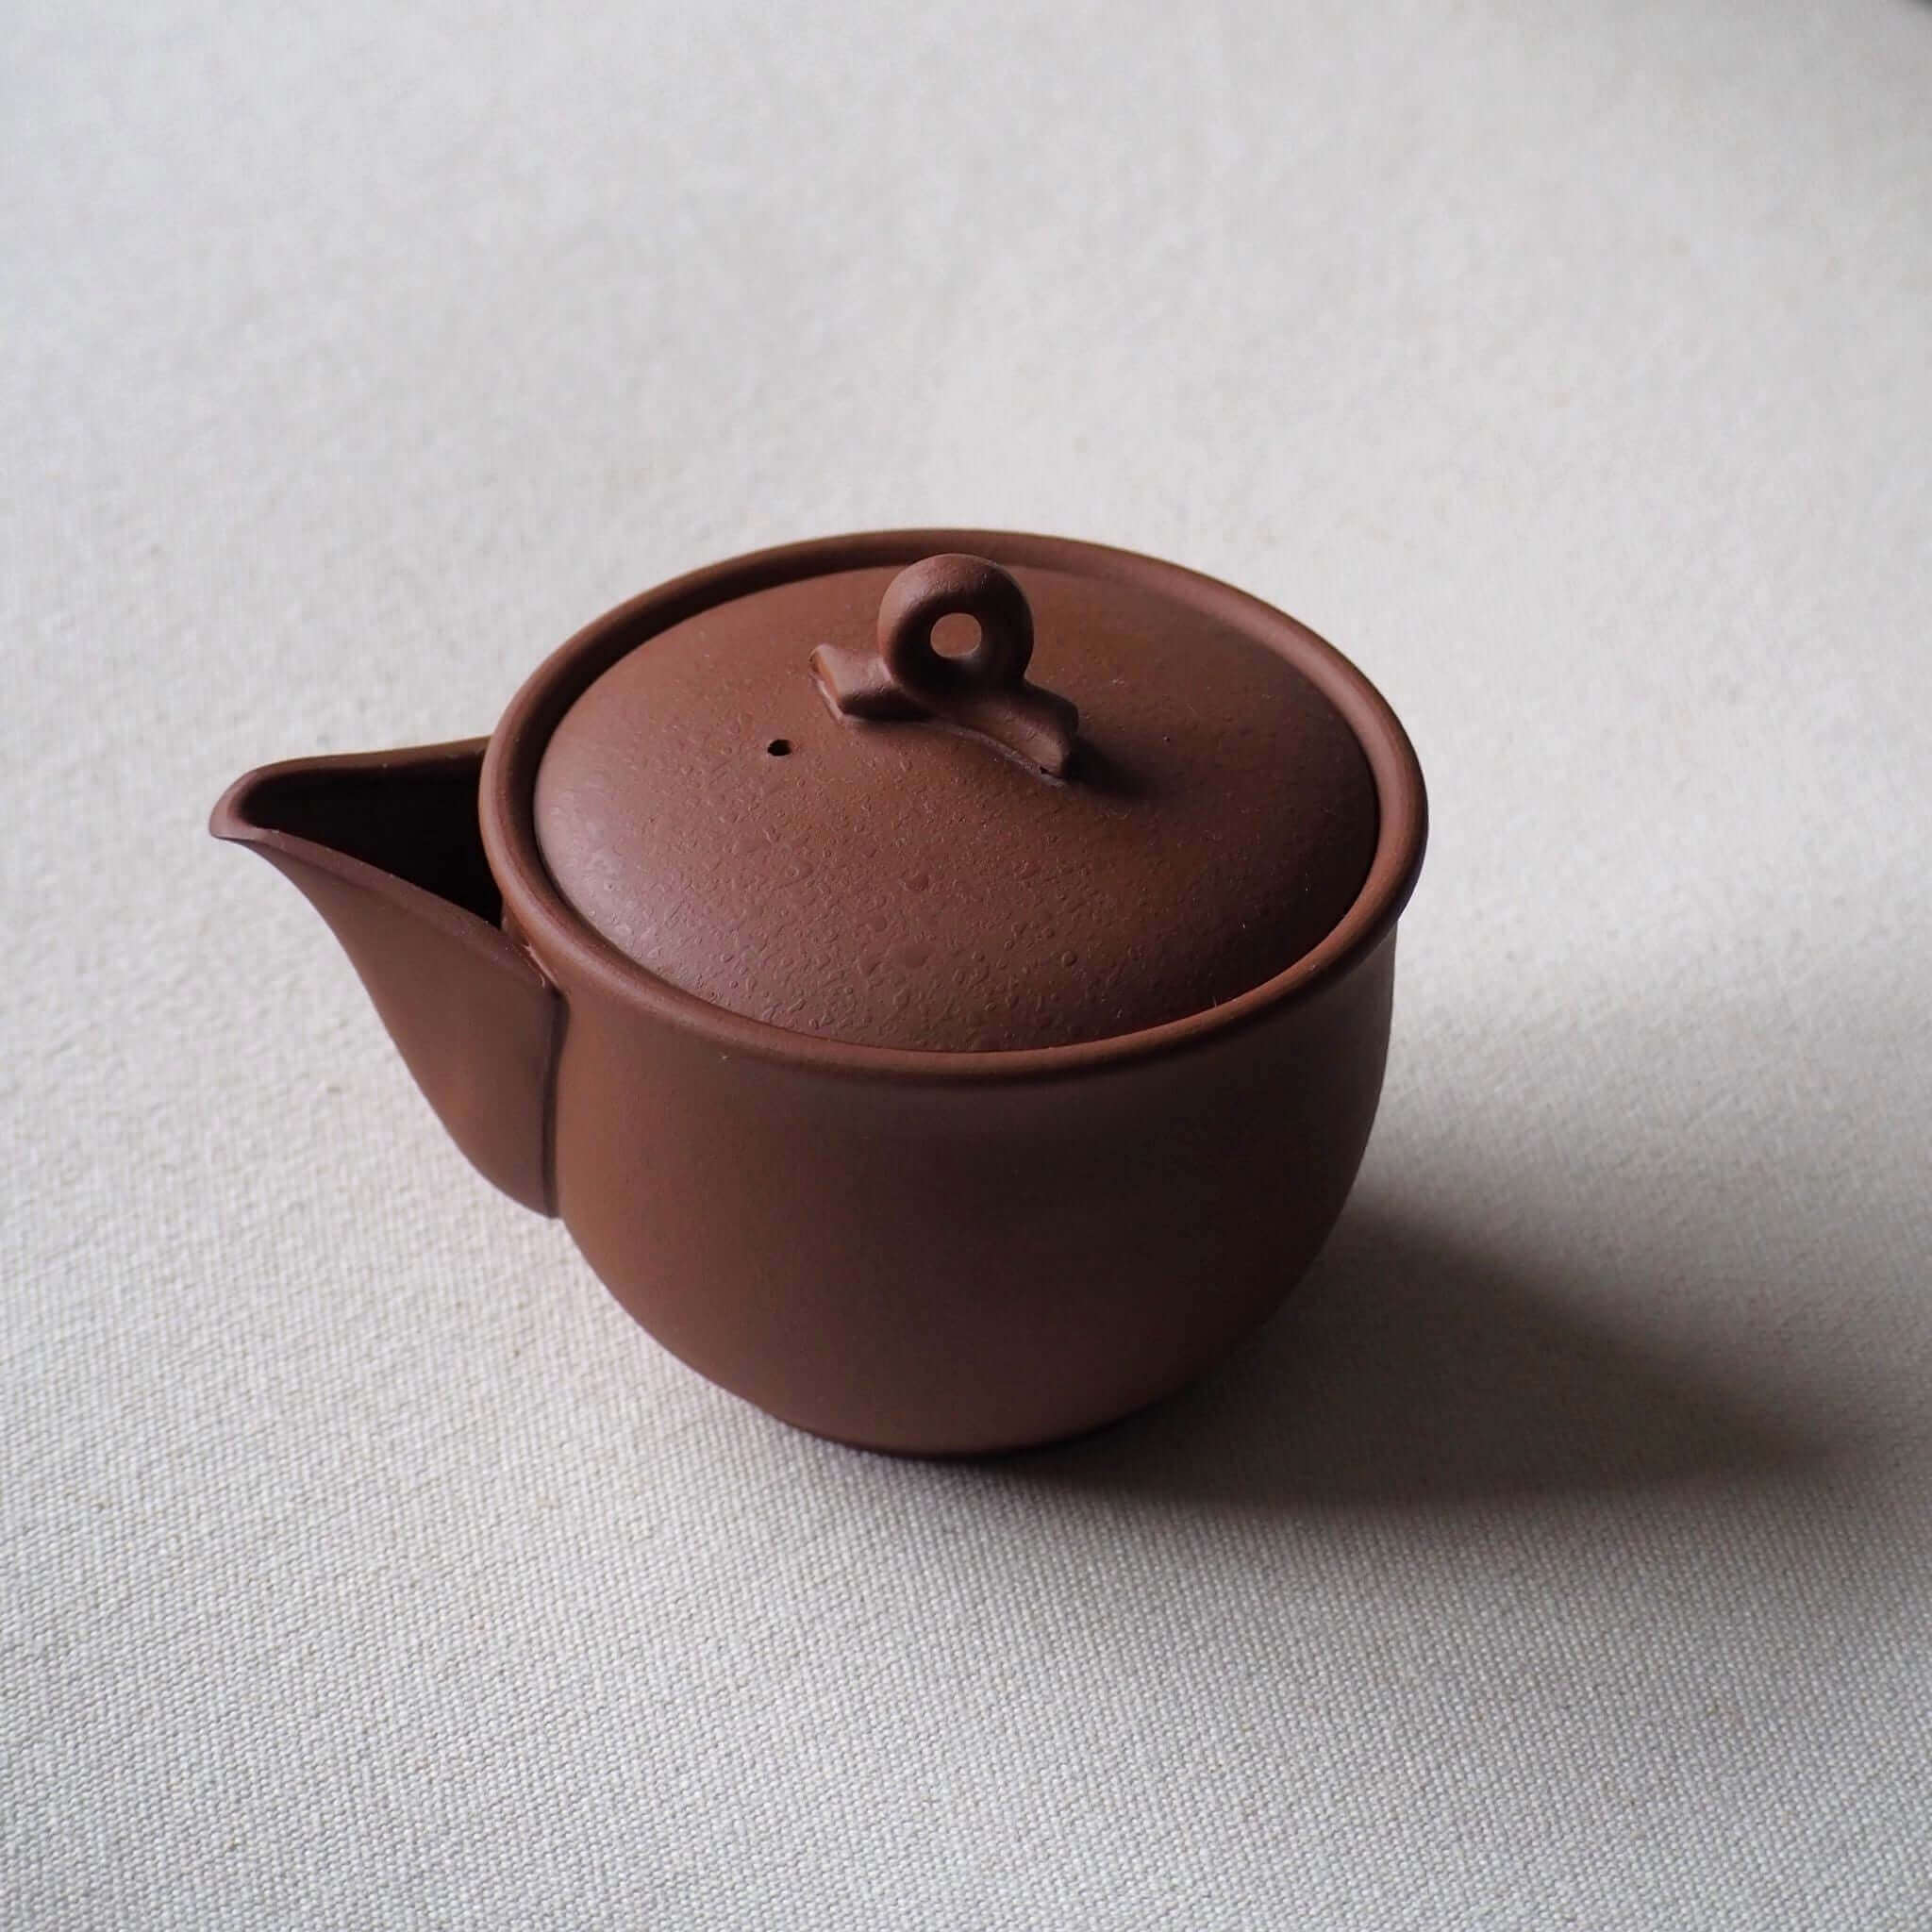 常滑焼の赤茶色の茶器の写真